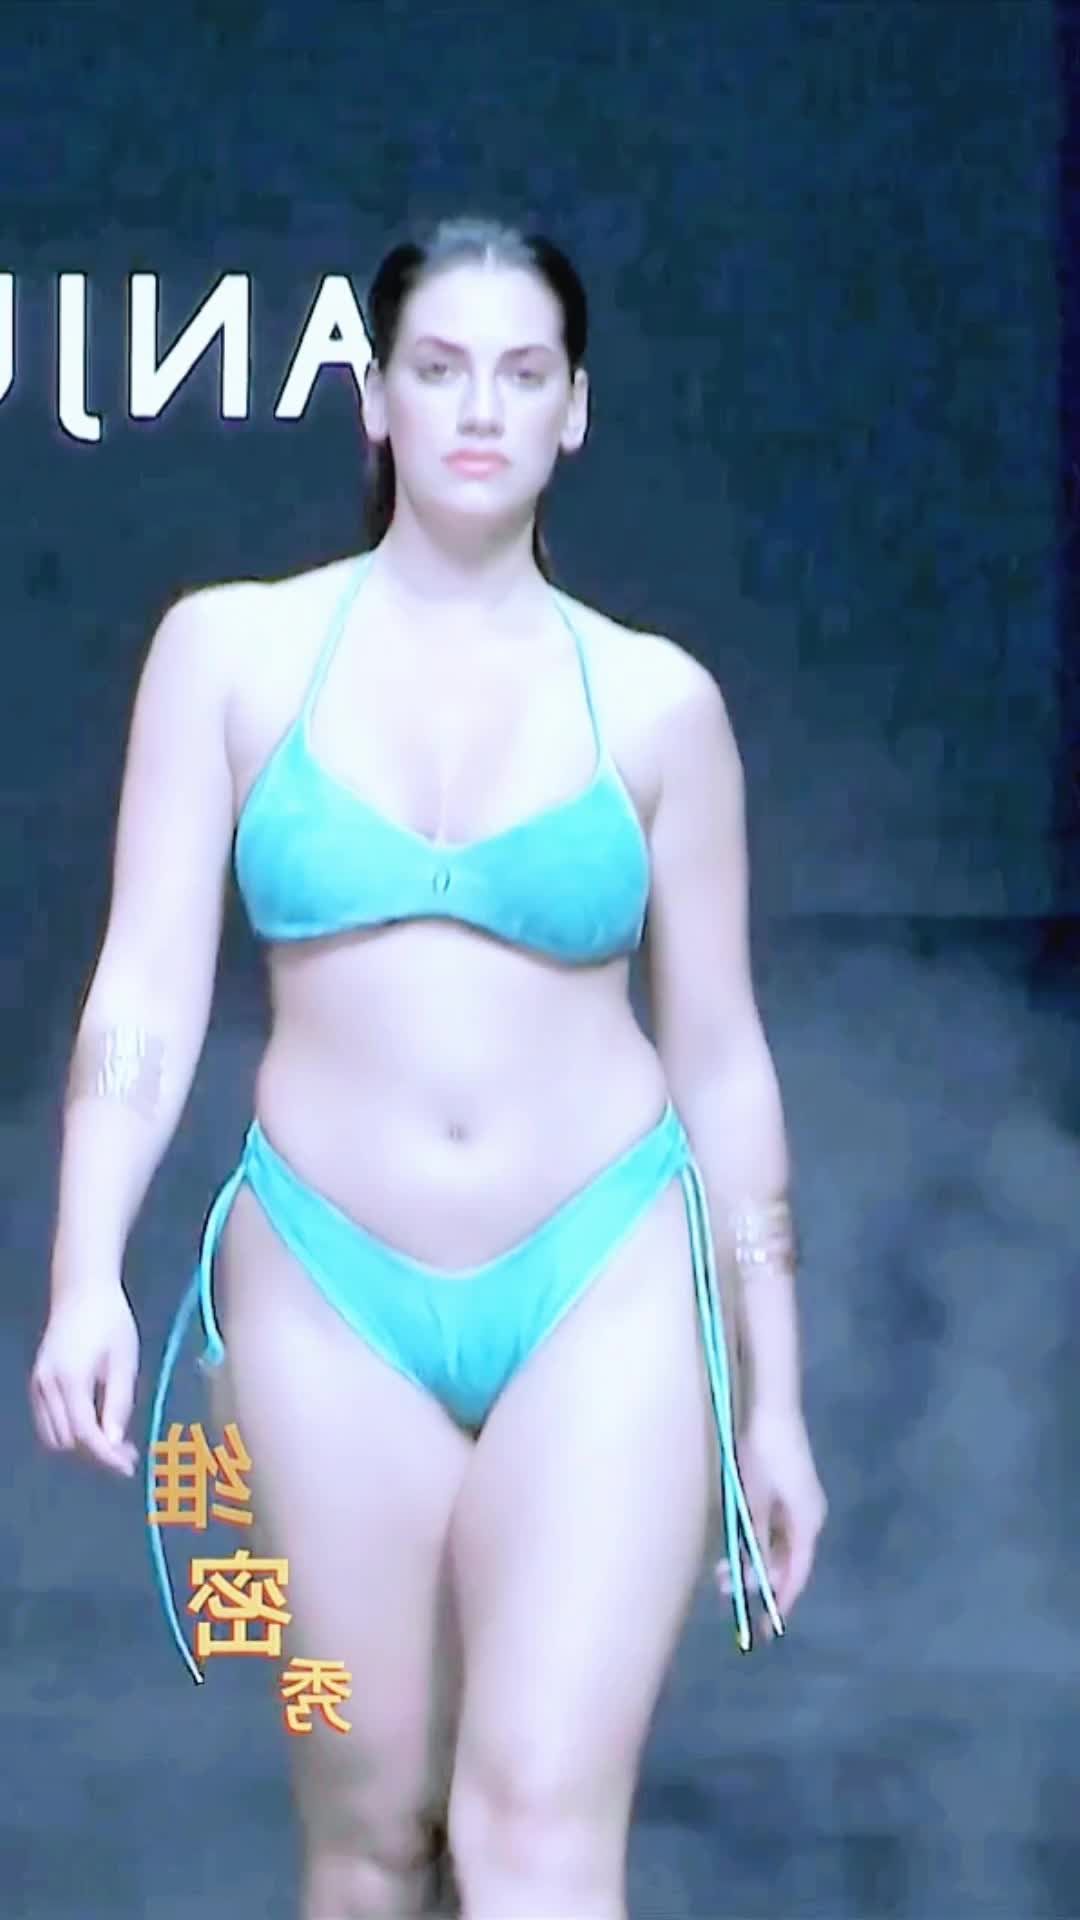 【ビキニで歩くランウェイモデル美女たちのボディラインが超セクシー】Bikini swimwear show